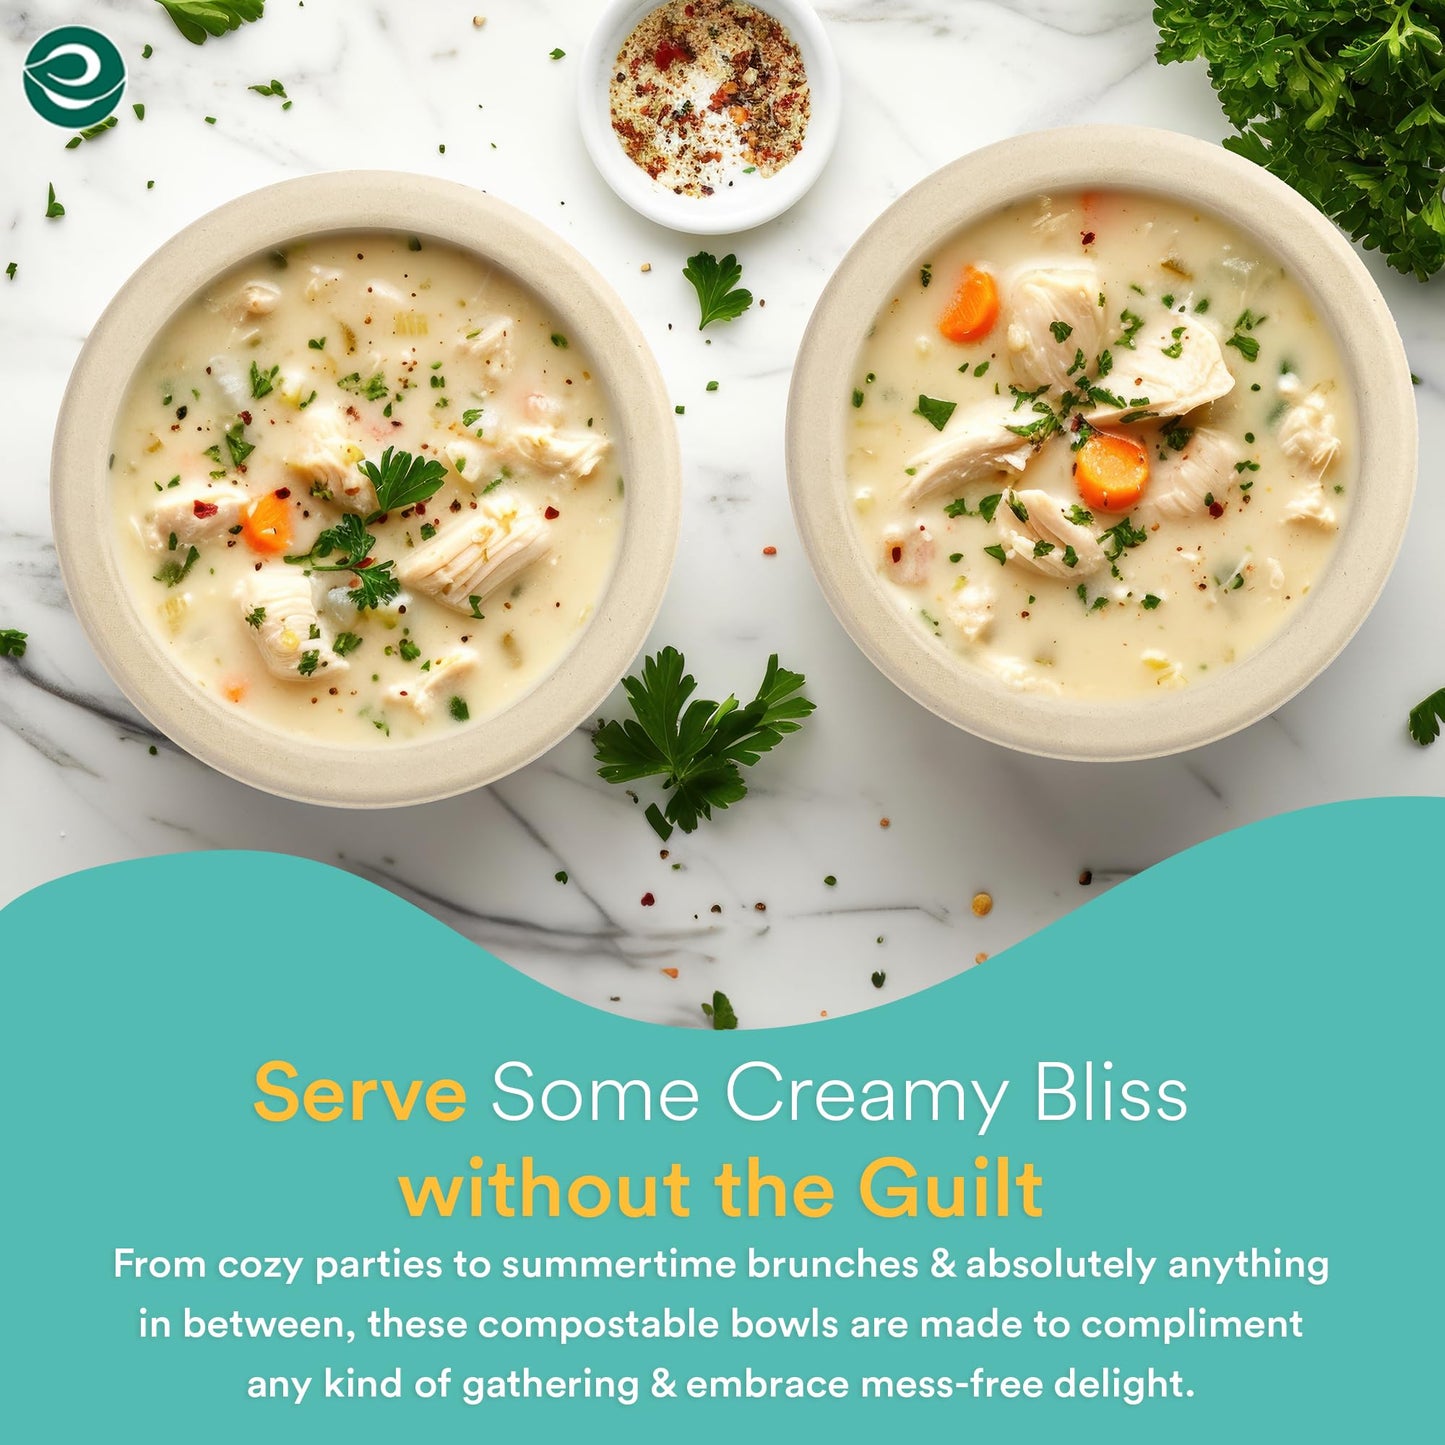 ECO SOUL 100% Compostable 16 Oz Soup Bowls (125-Pack) Disposable dessert bowls | Heavy duty paper bowl|Eco-friendly salad bowl | Biodegradable large Bowls